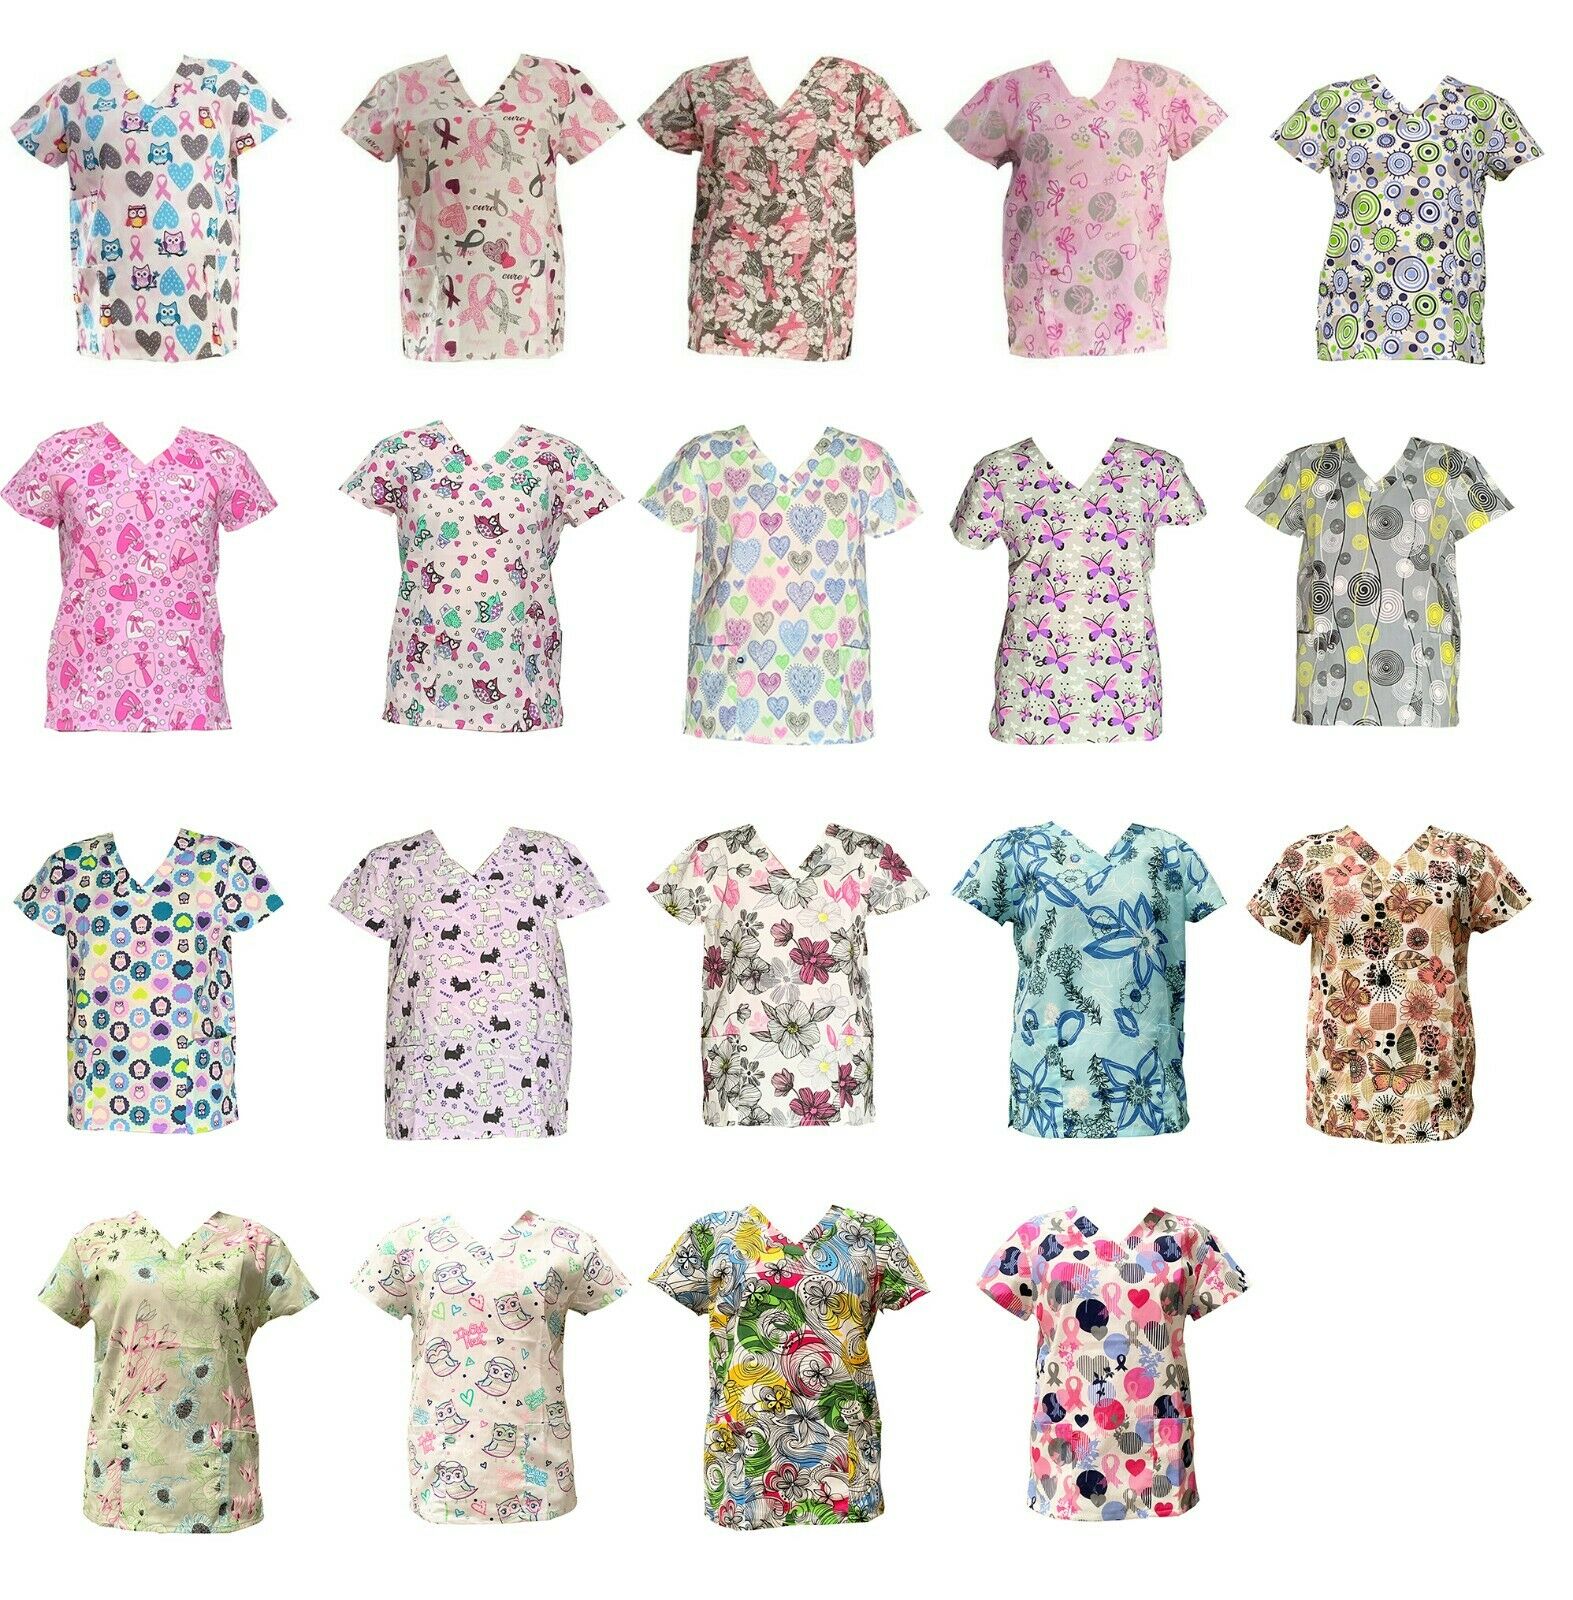 Zikit Women's Fashion Medical Nursing Scrub Printed Tops Xs-3xl